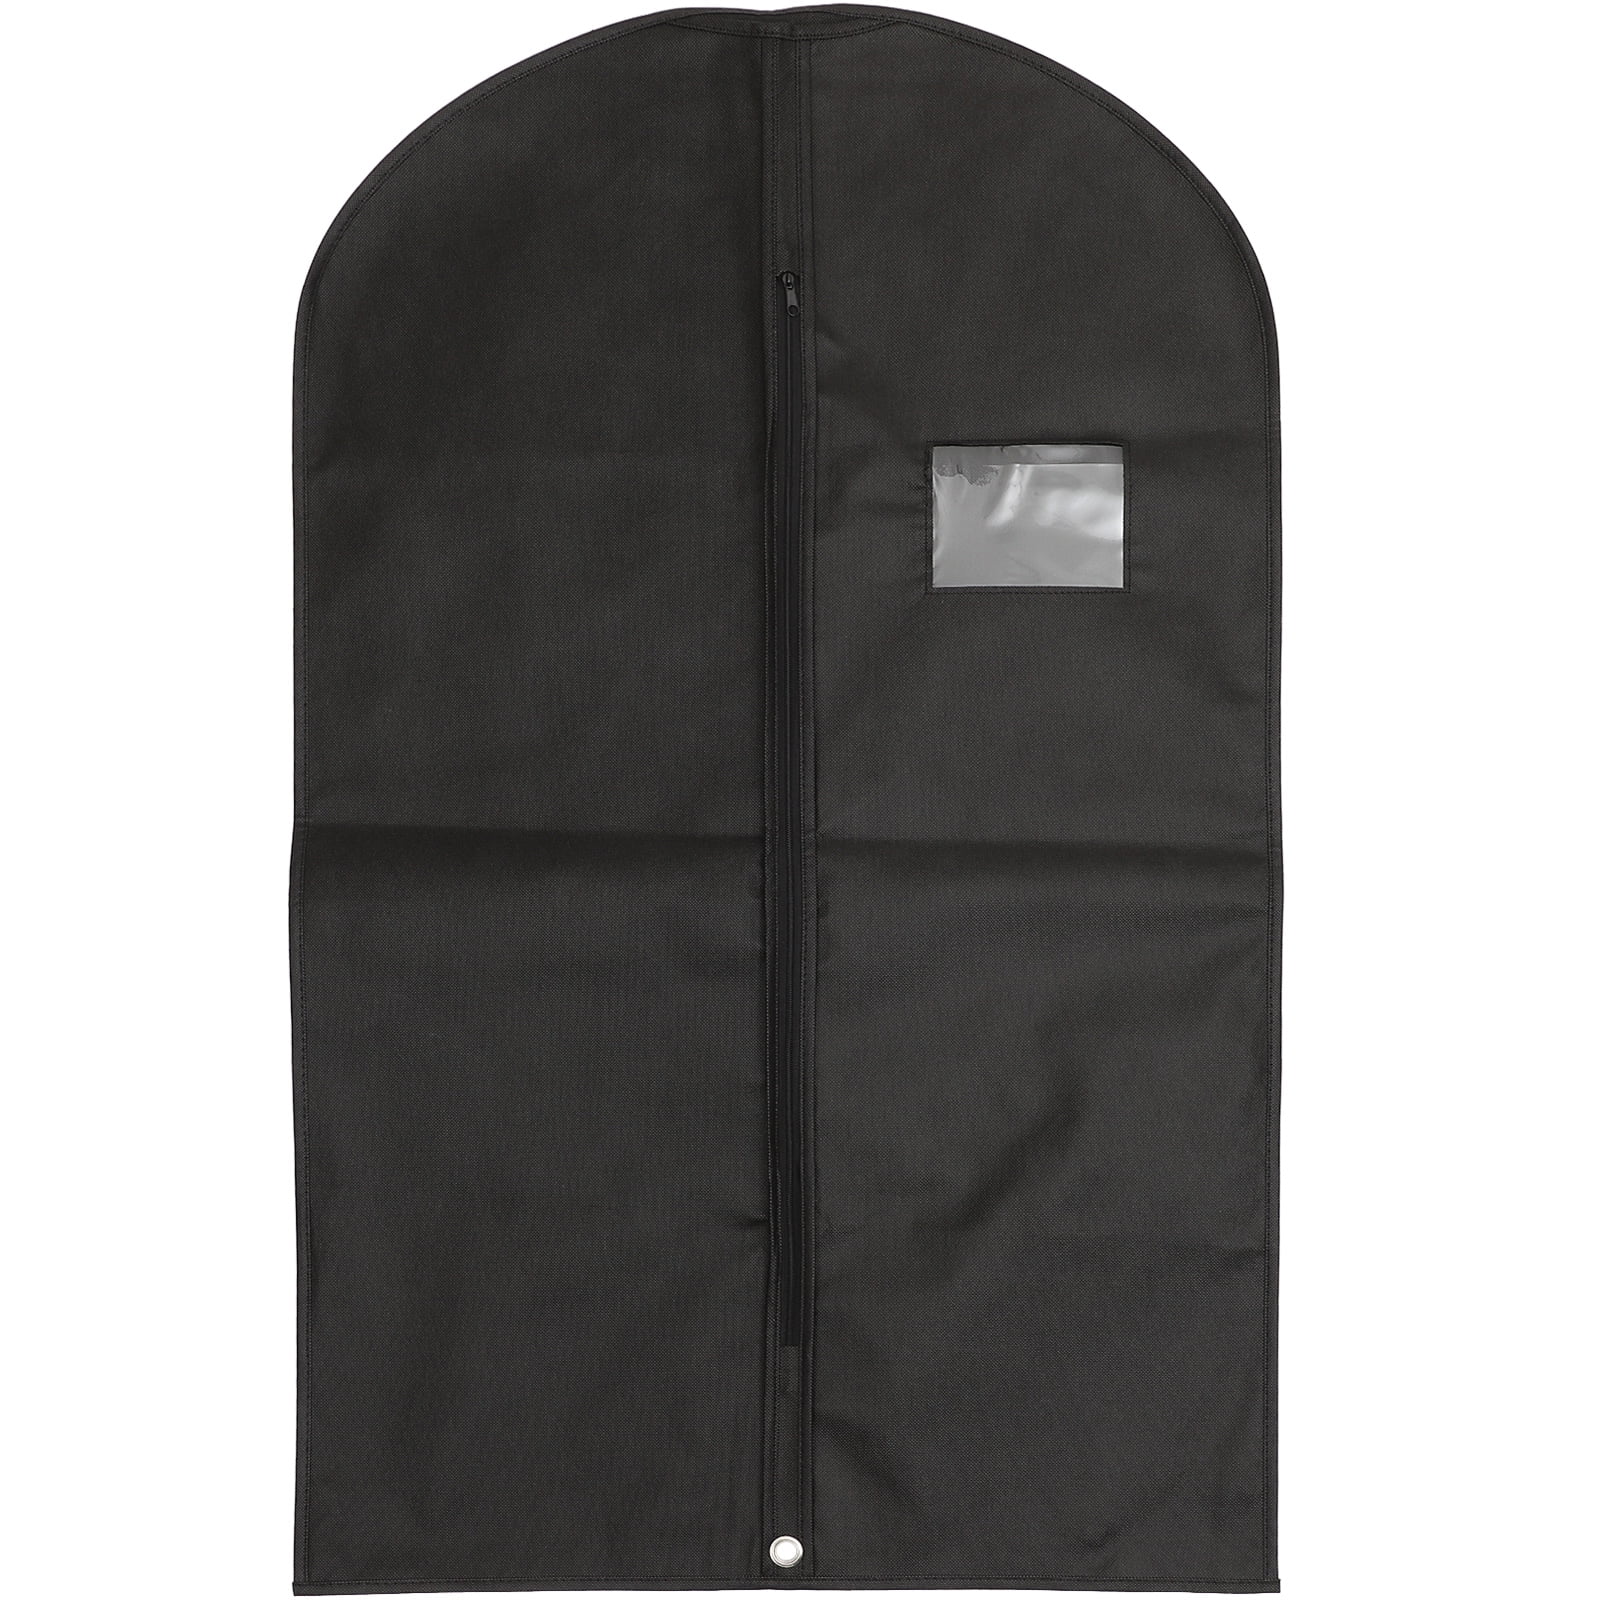 Suit Dust Cover Bag Garment Formal Dress Storage Zip Bag Dust-proof ...